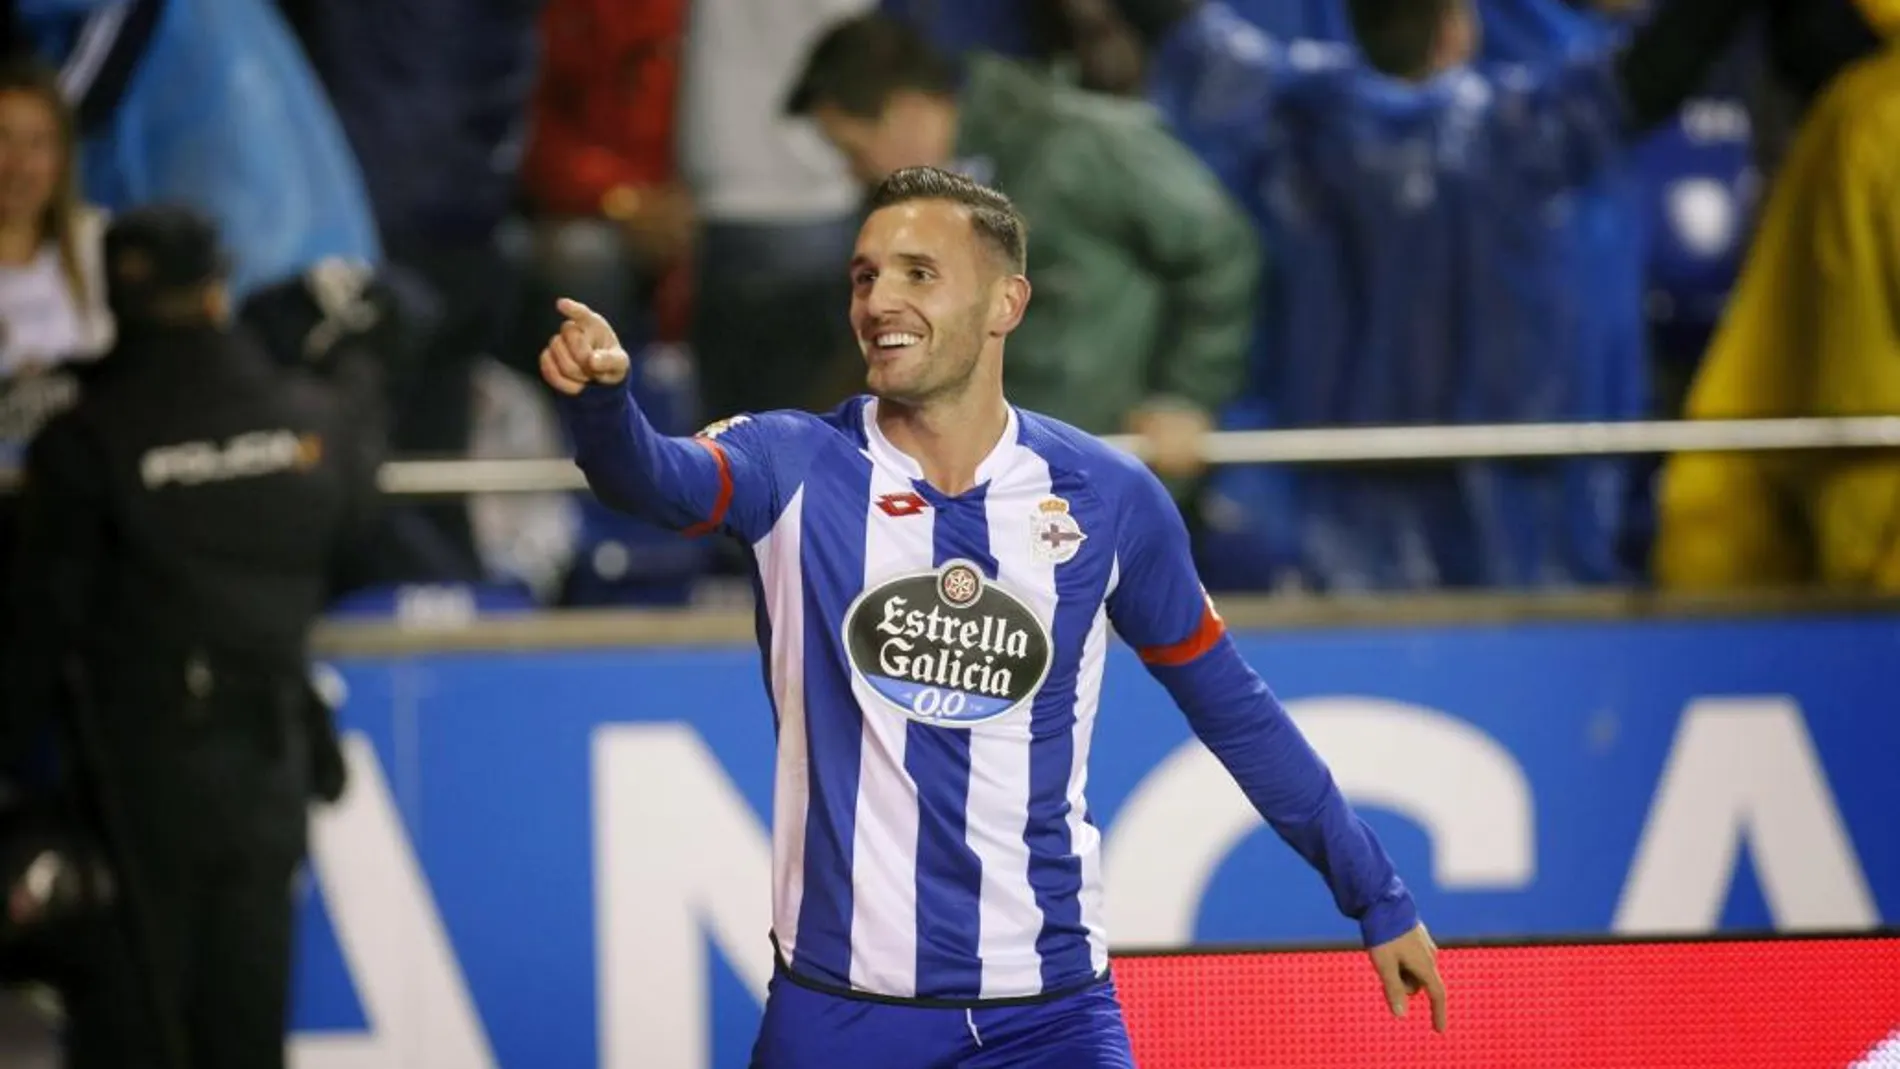 El centrocampista del Deportivo Lucas Pérez celebra su gol, primero del equipo ante el Celta de Vigo, durante el partido